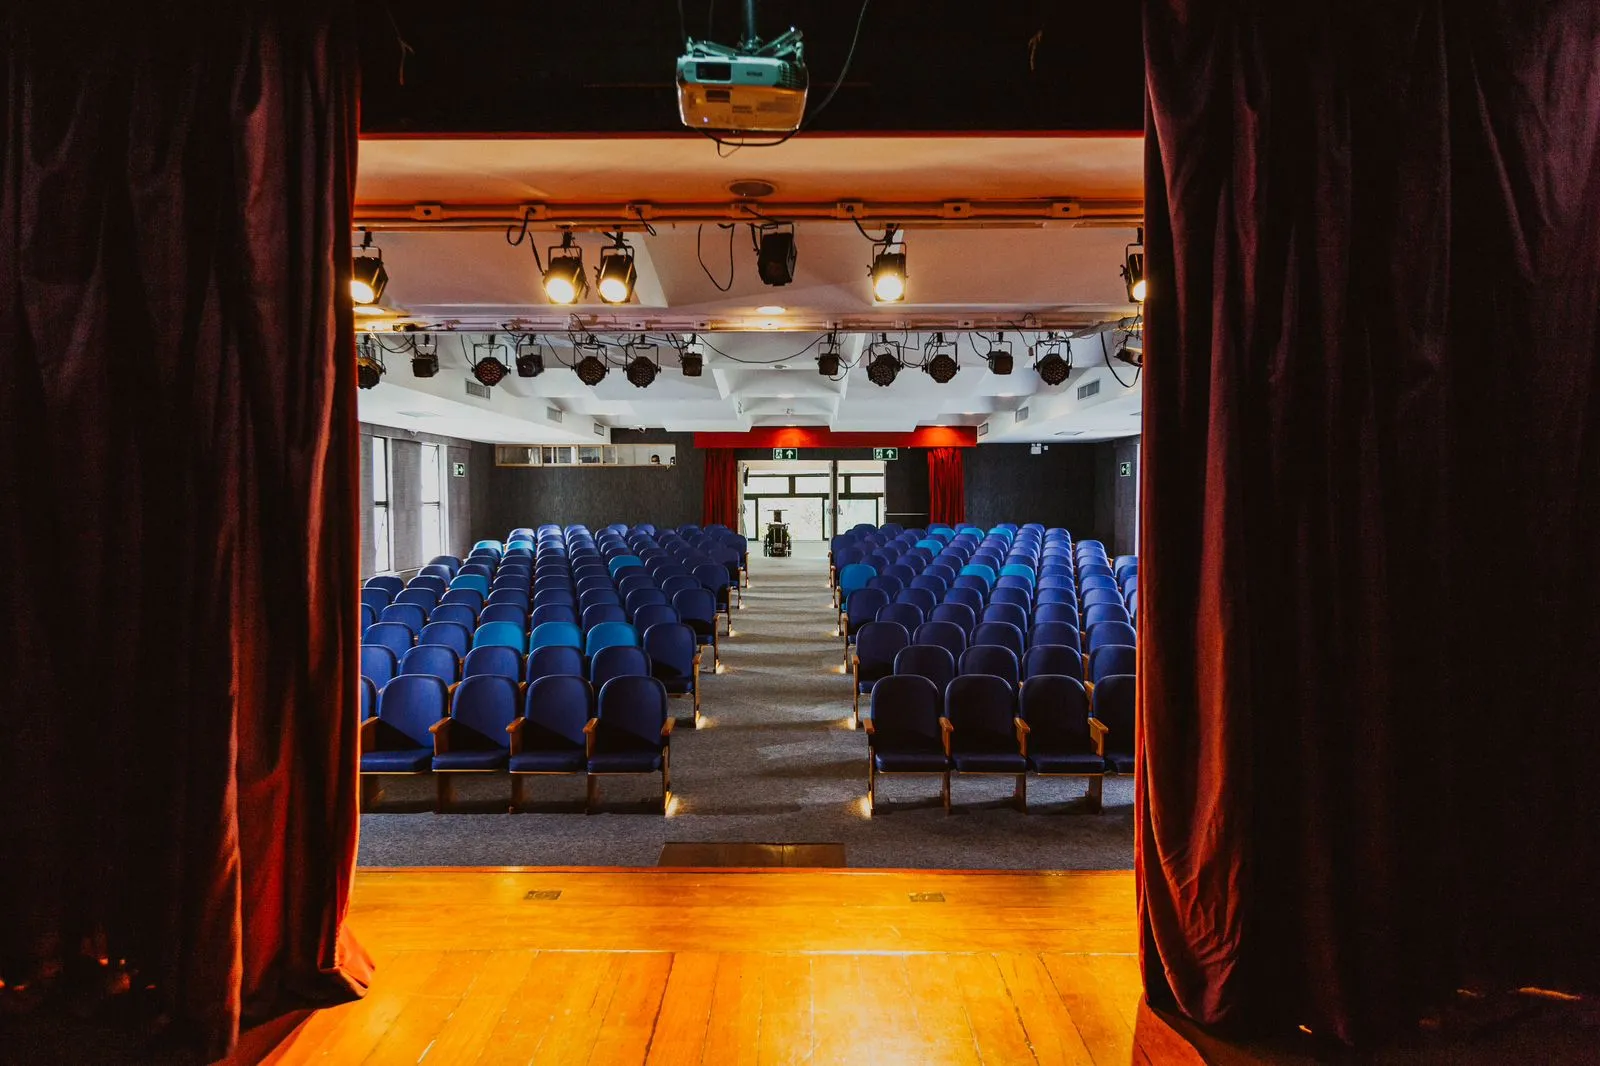 O Teatro GayLussac conta com 200 lugares